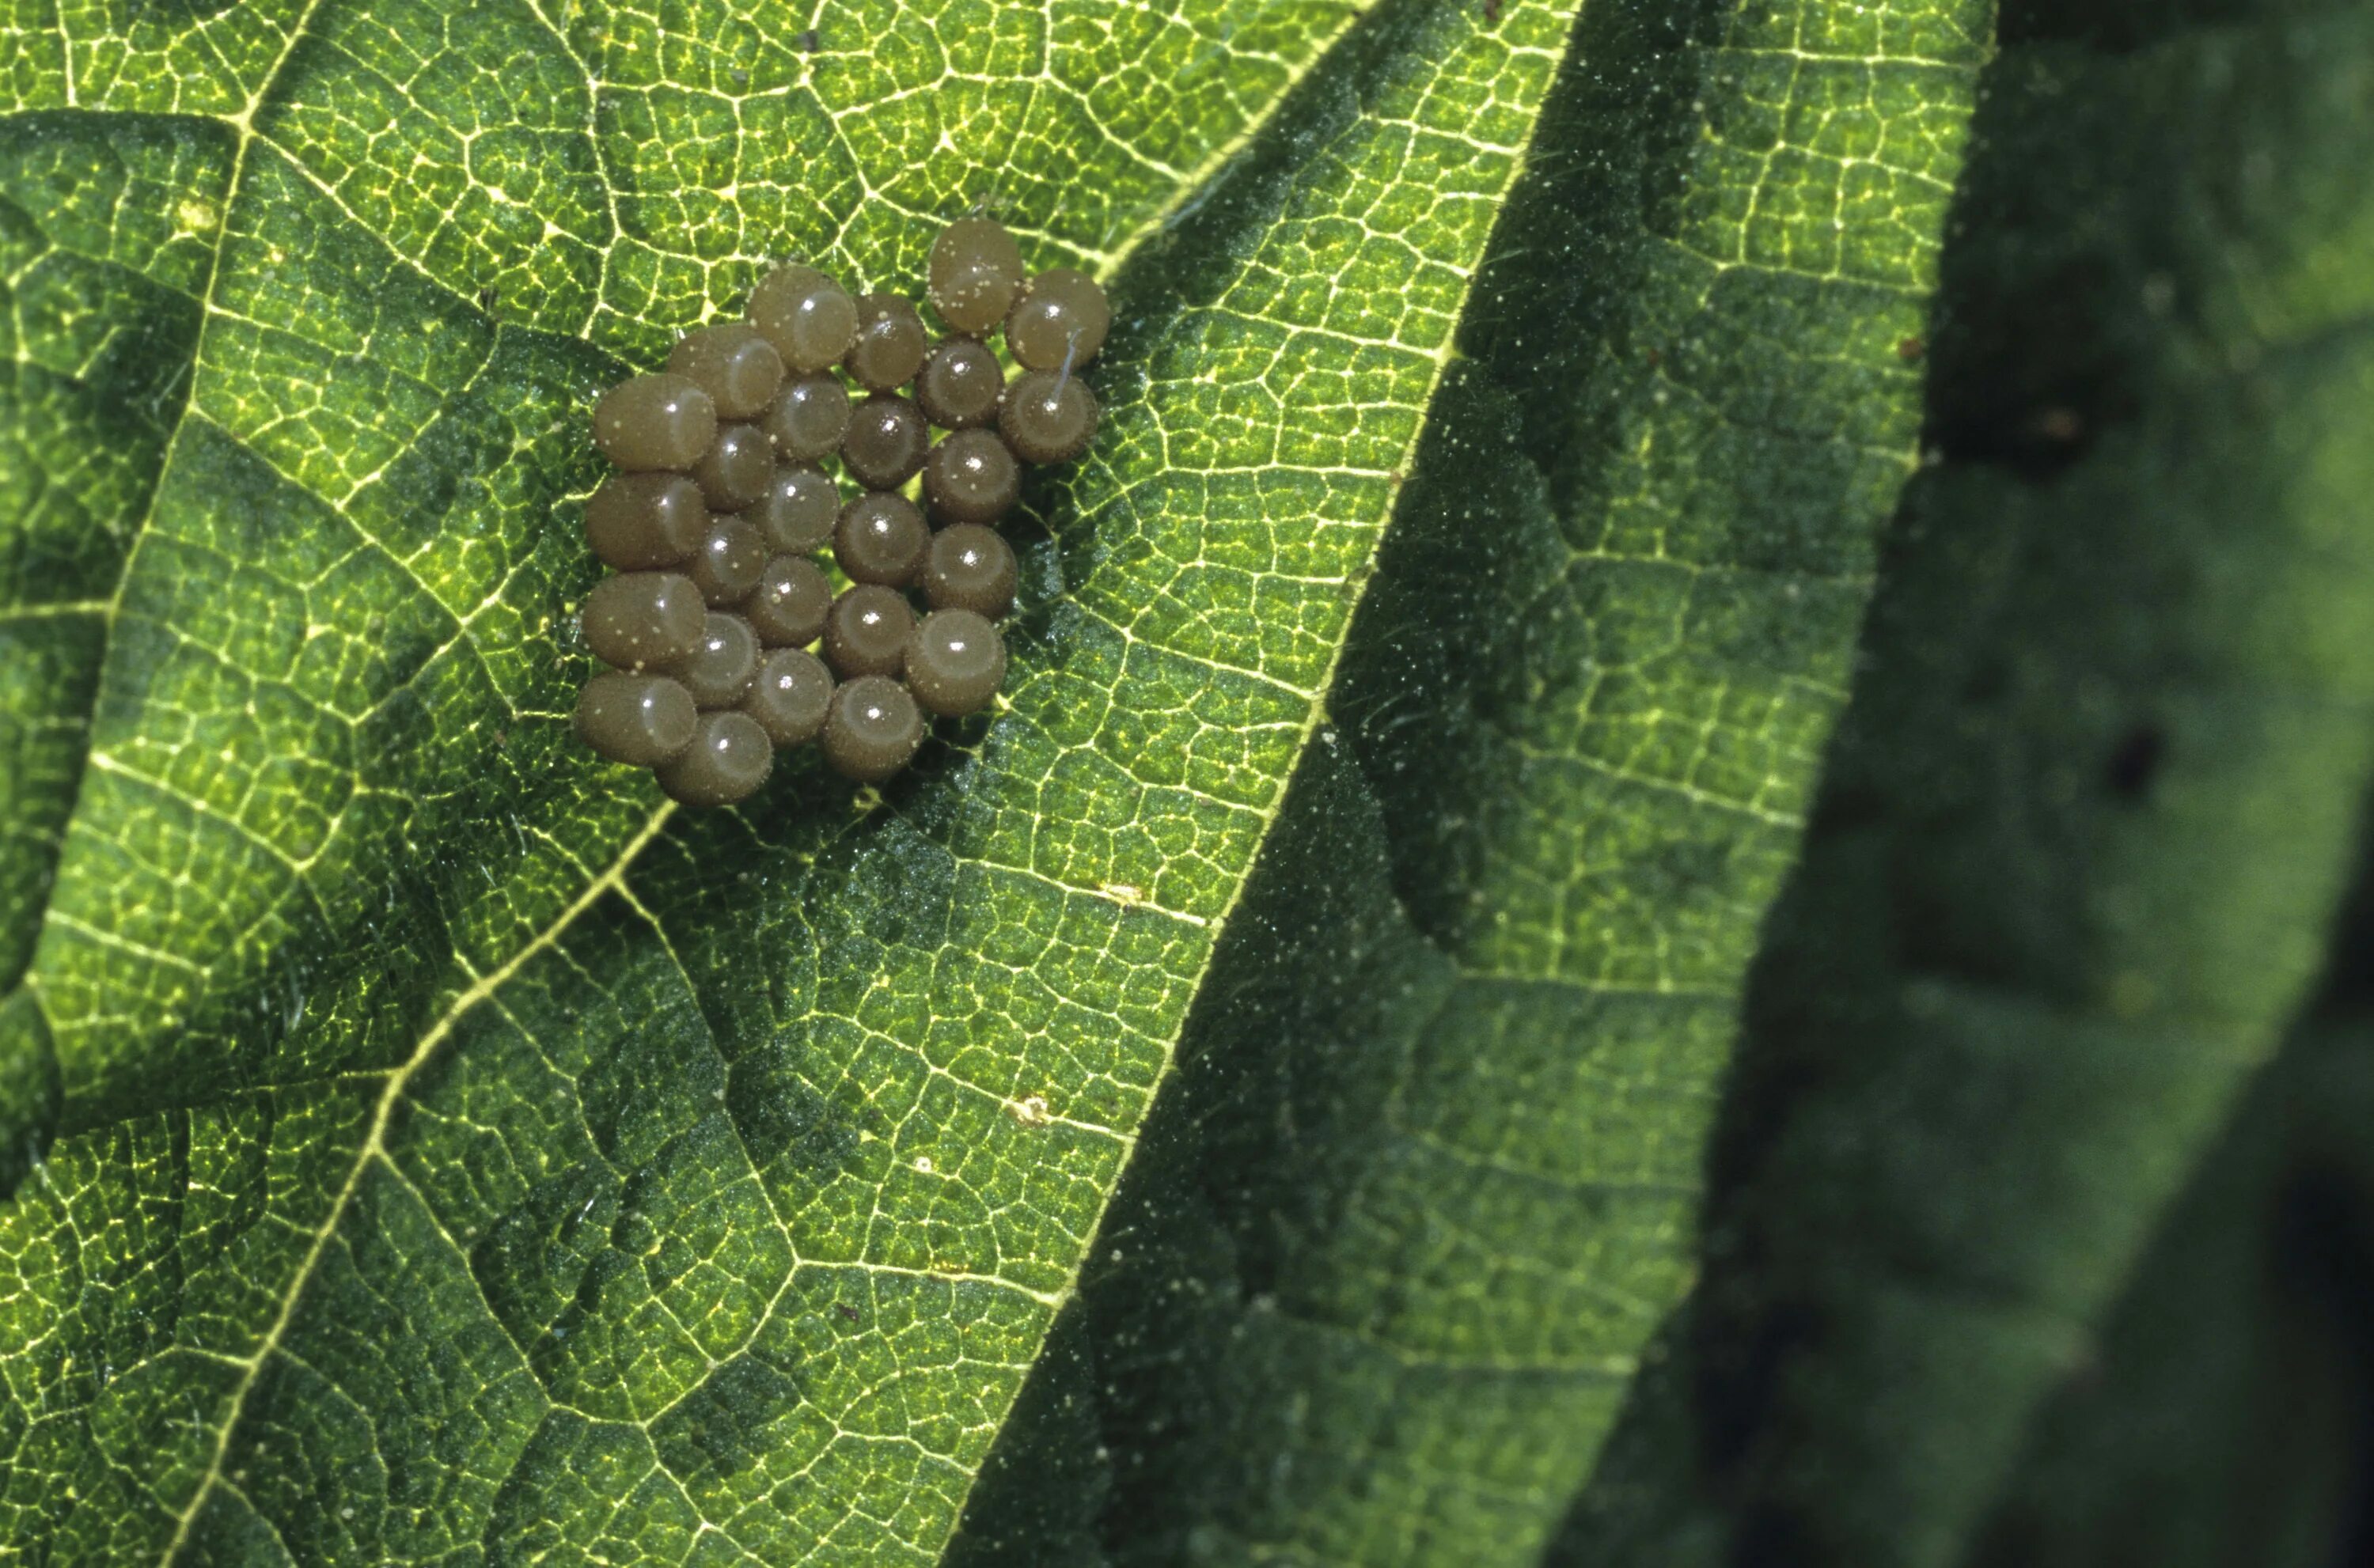 Личинки на листьях. Яйца насекомых на листьях. Яйца вредителей на листьях. Личинки на листьях винограда.